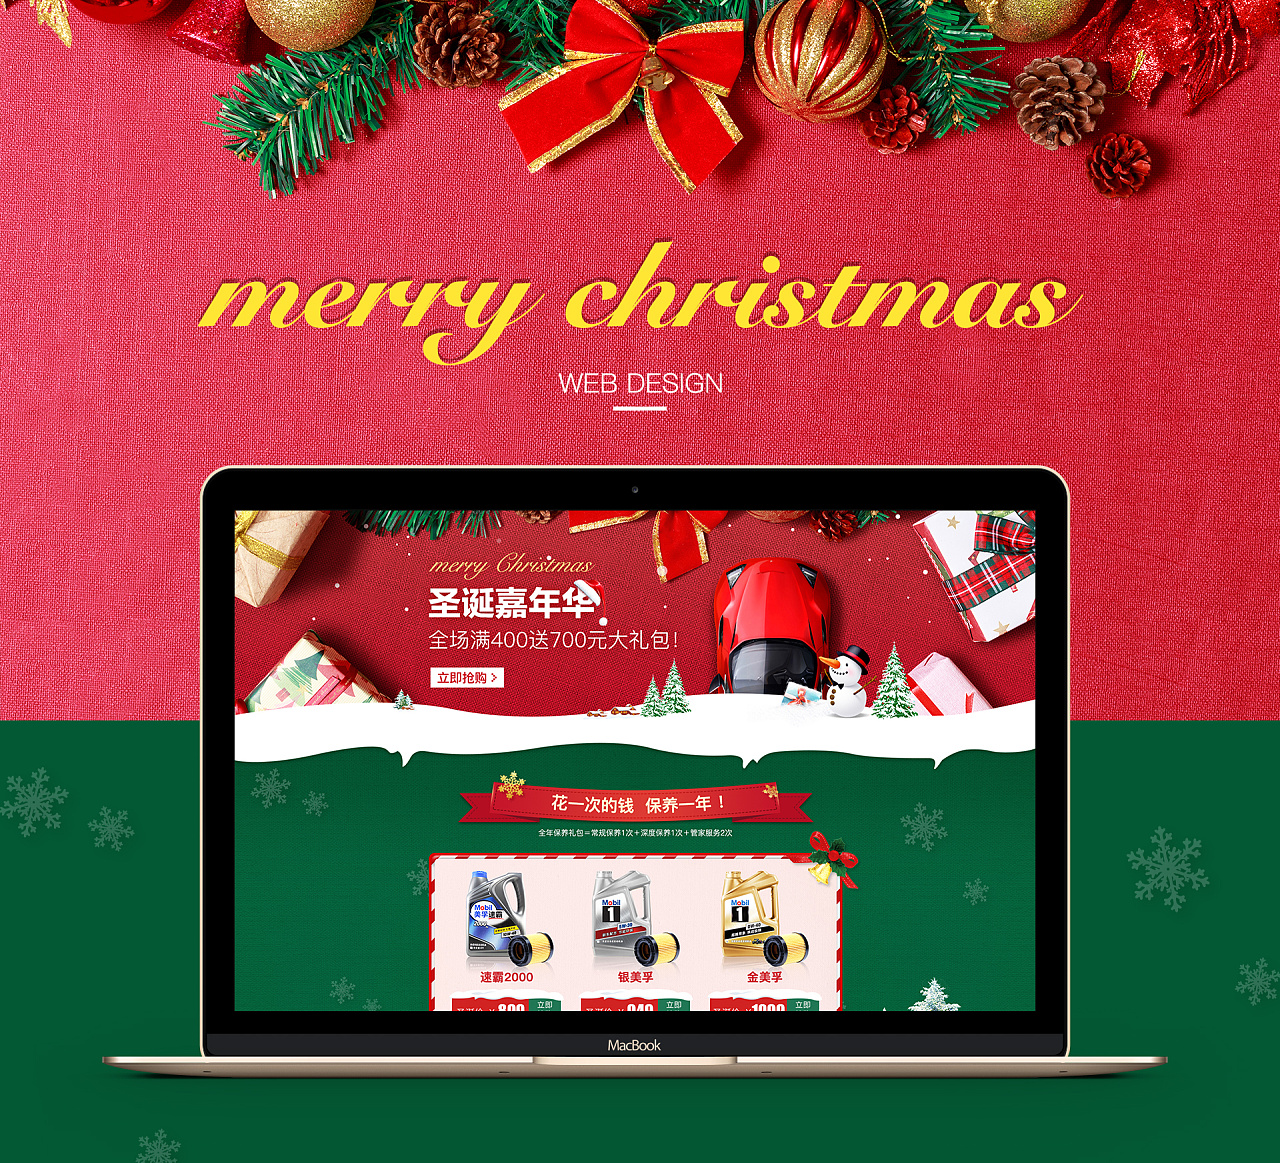 圣诞节的祝福网页_圣诞节网页html5_圣诞网站